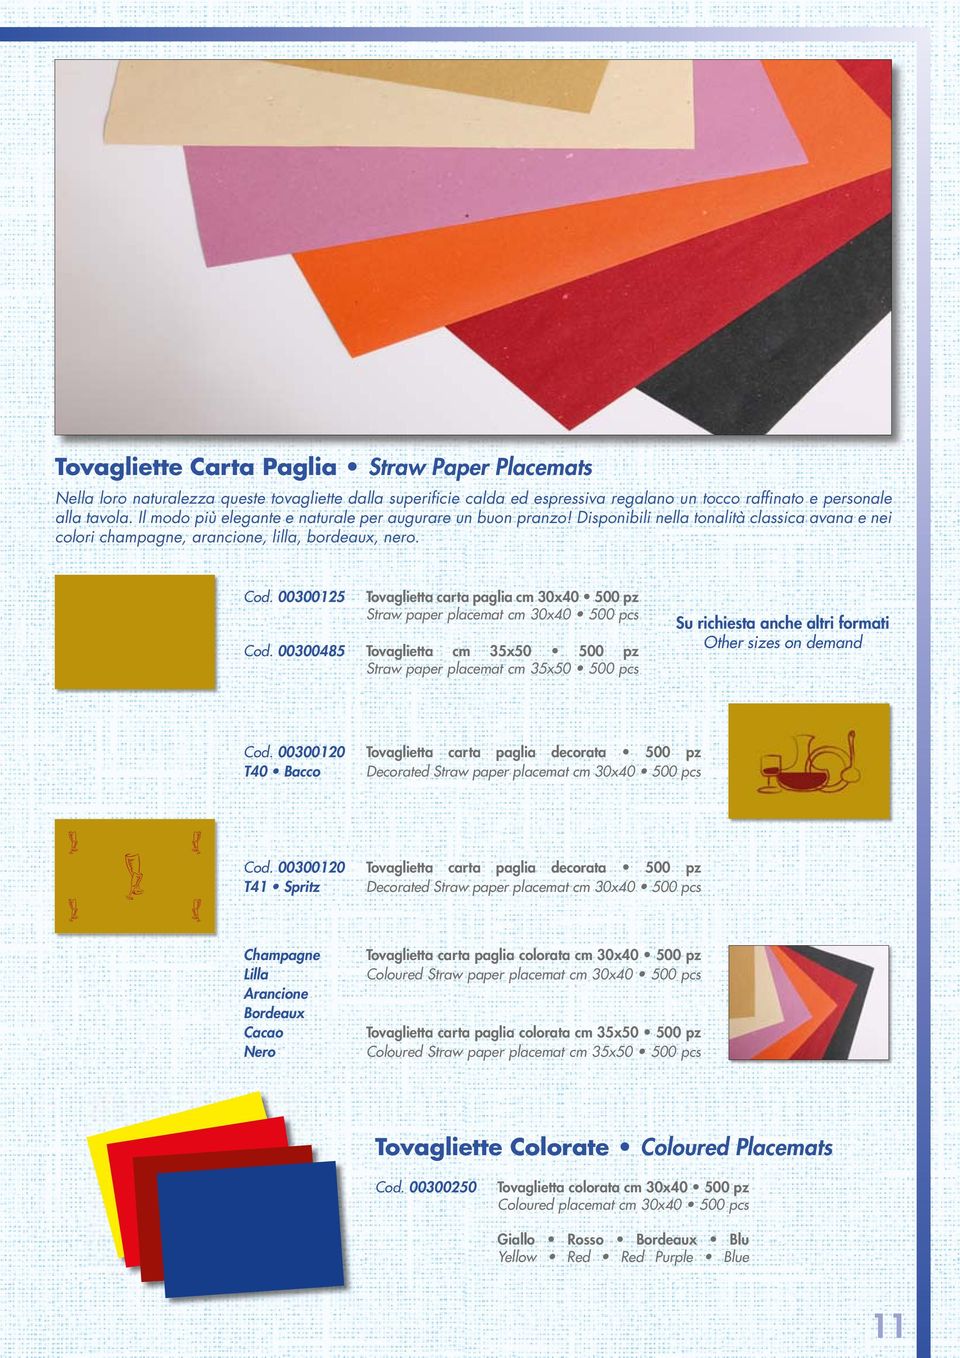 00300125 Tovaglietta carta paglia cm 30x40 500 pz Straw paper placemat cm 30x40 500 pcs Cod.